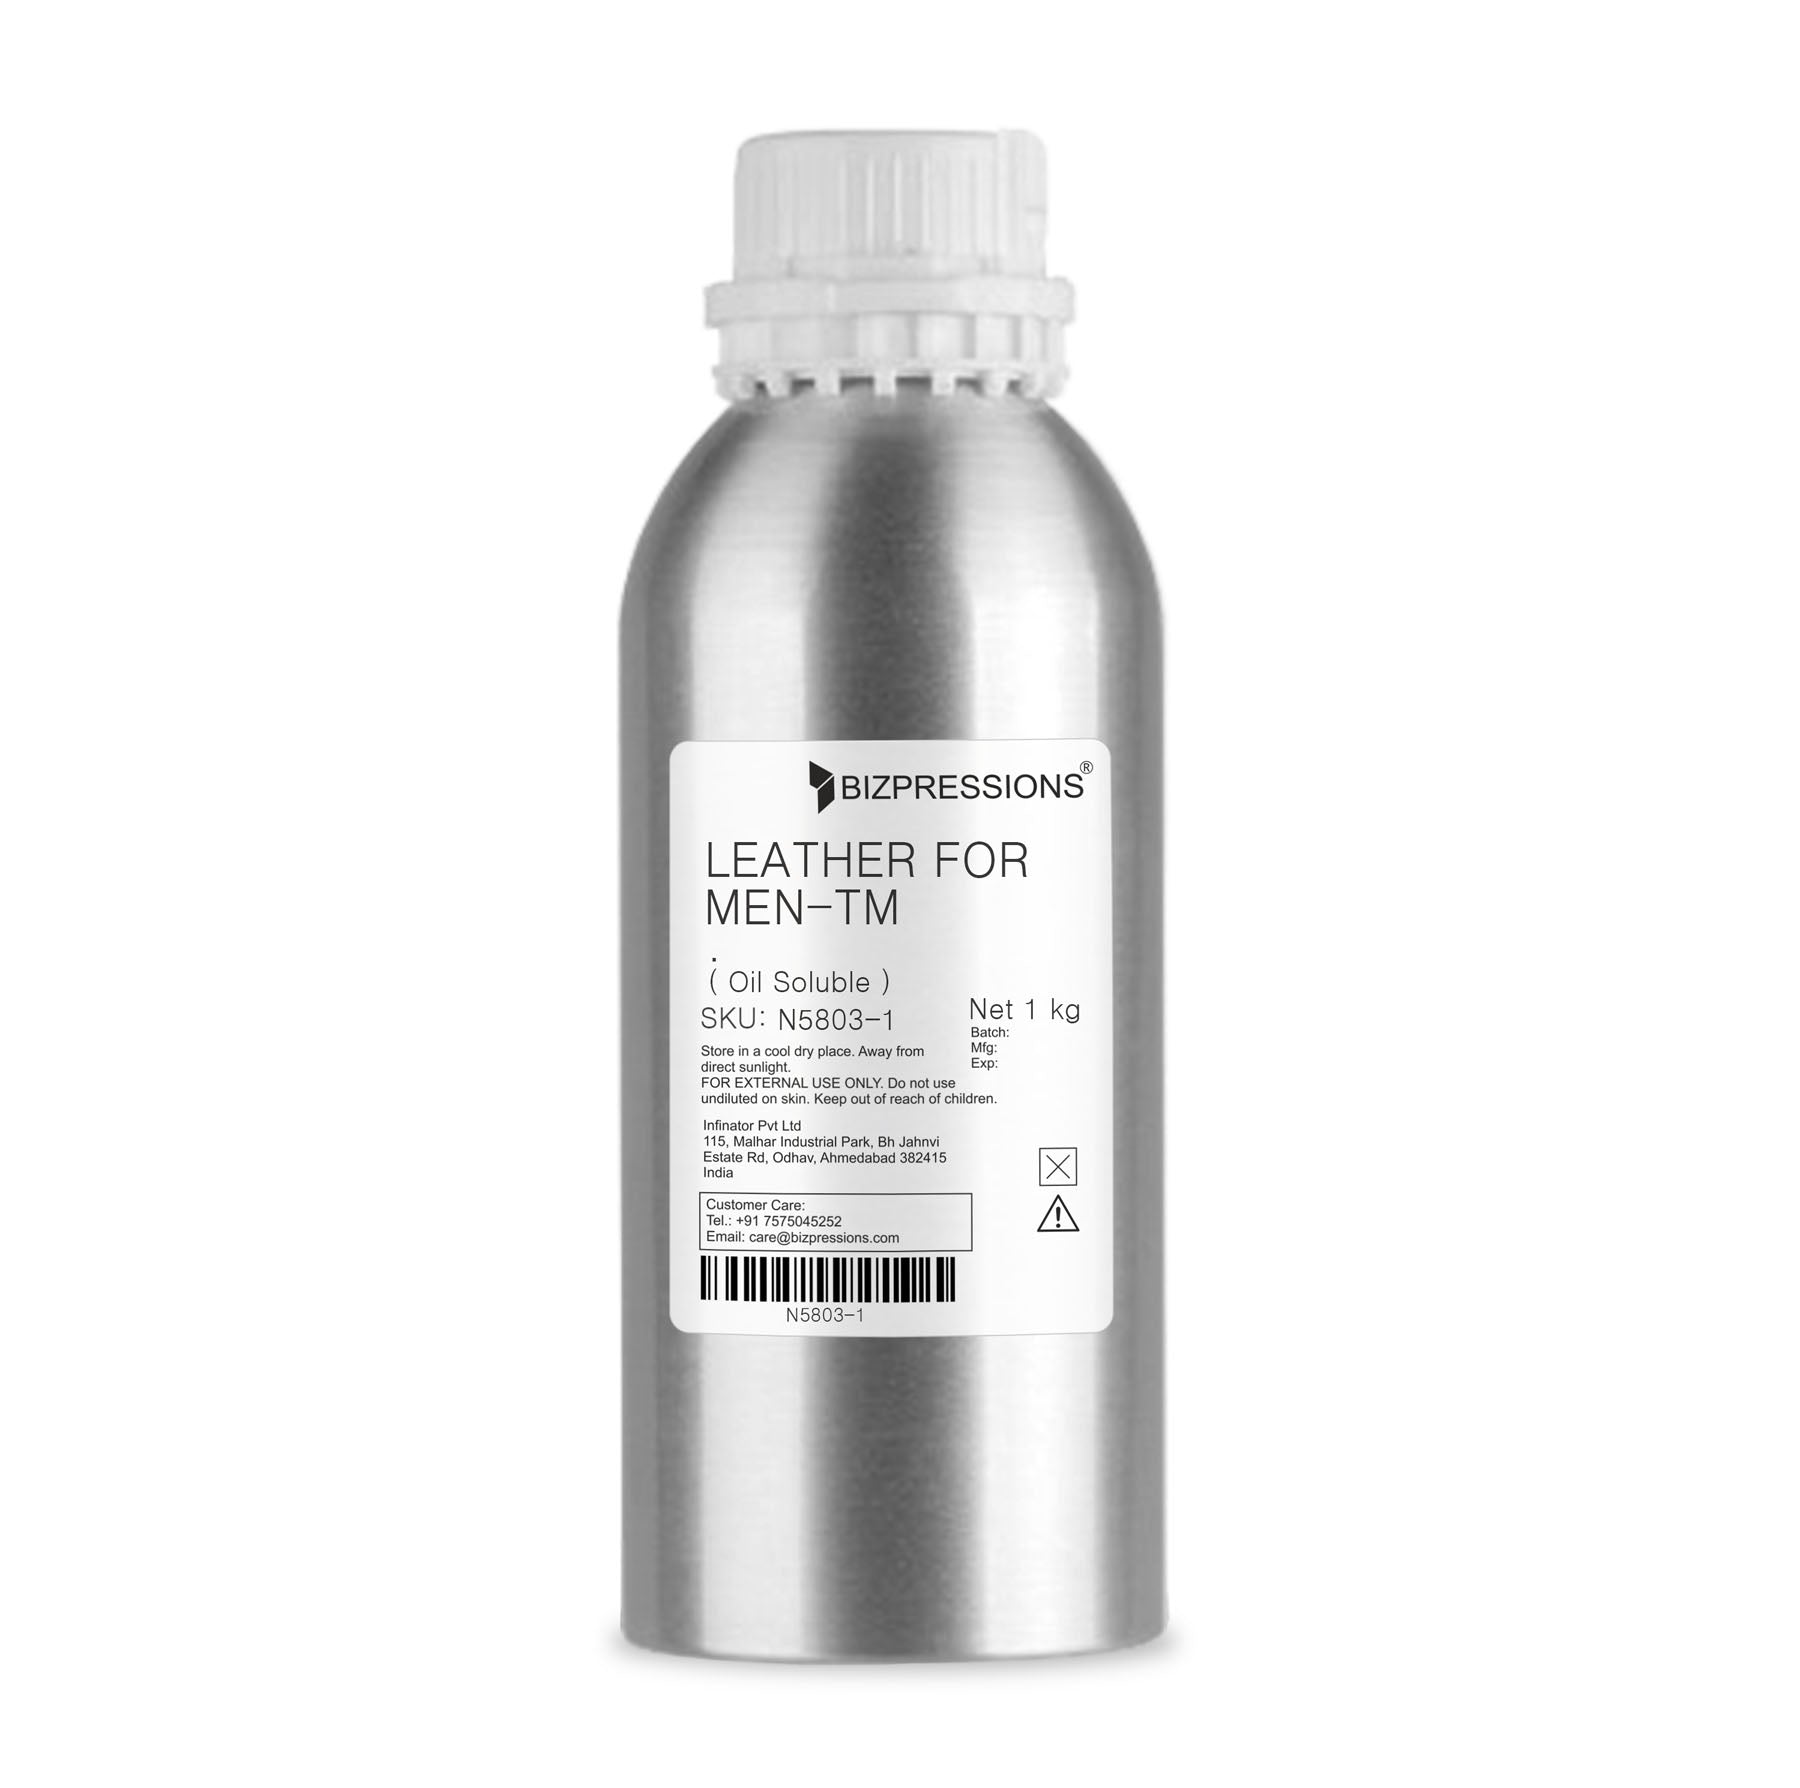 LEATHER FOR MEN-TM - Fragrance ( Oil Soluble ) - 1 kg